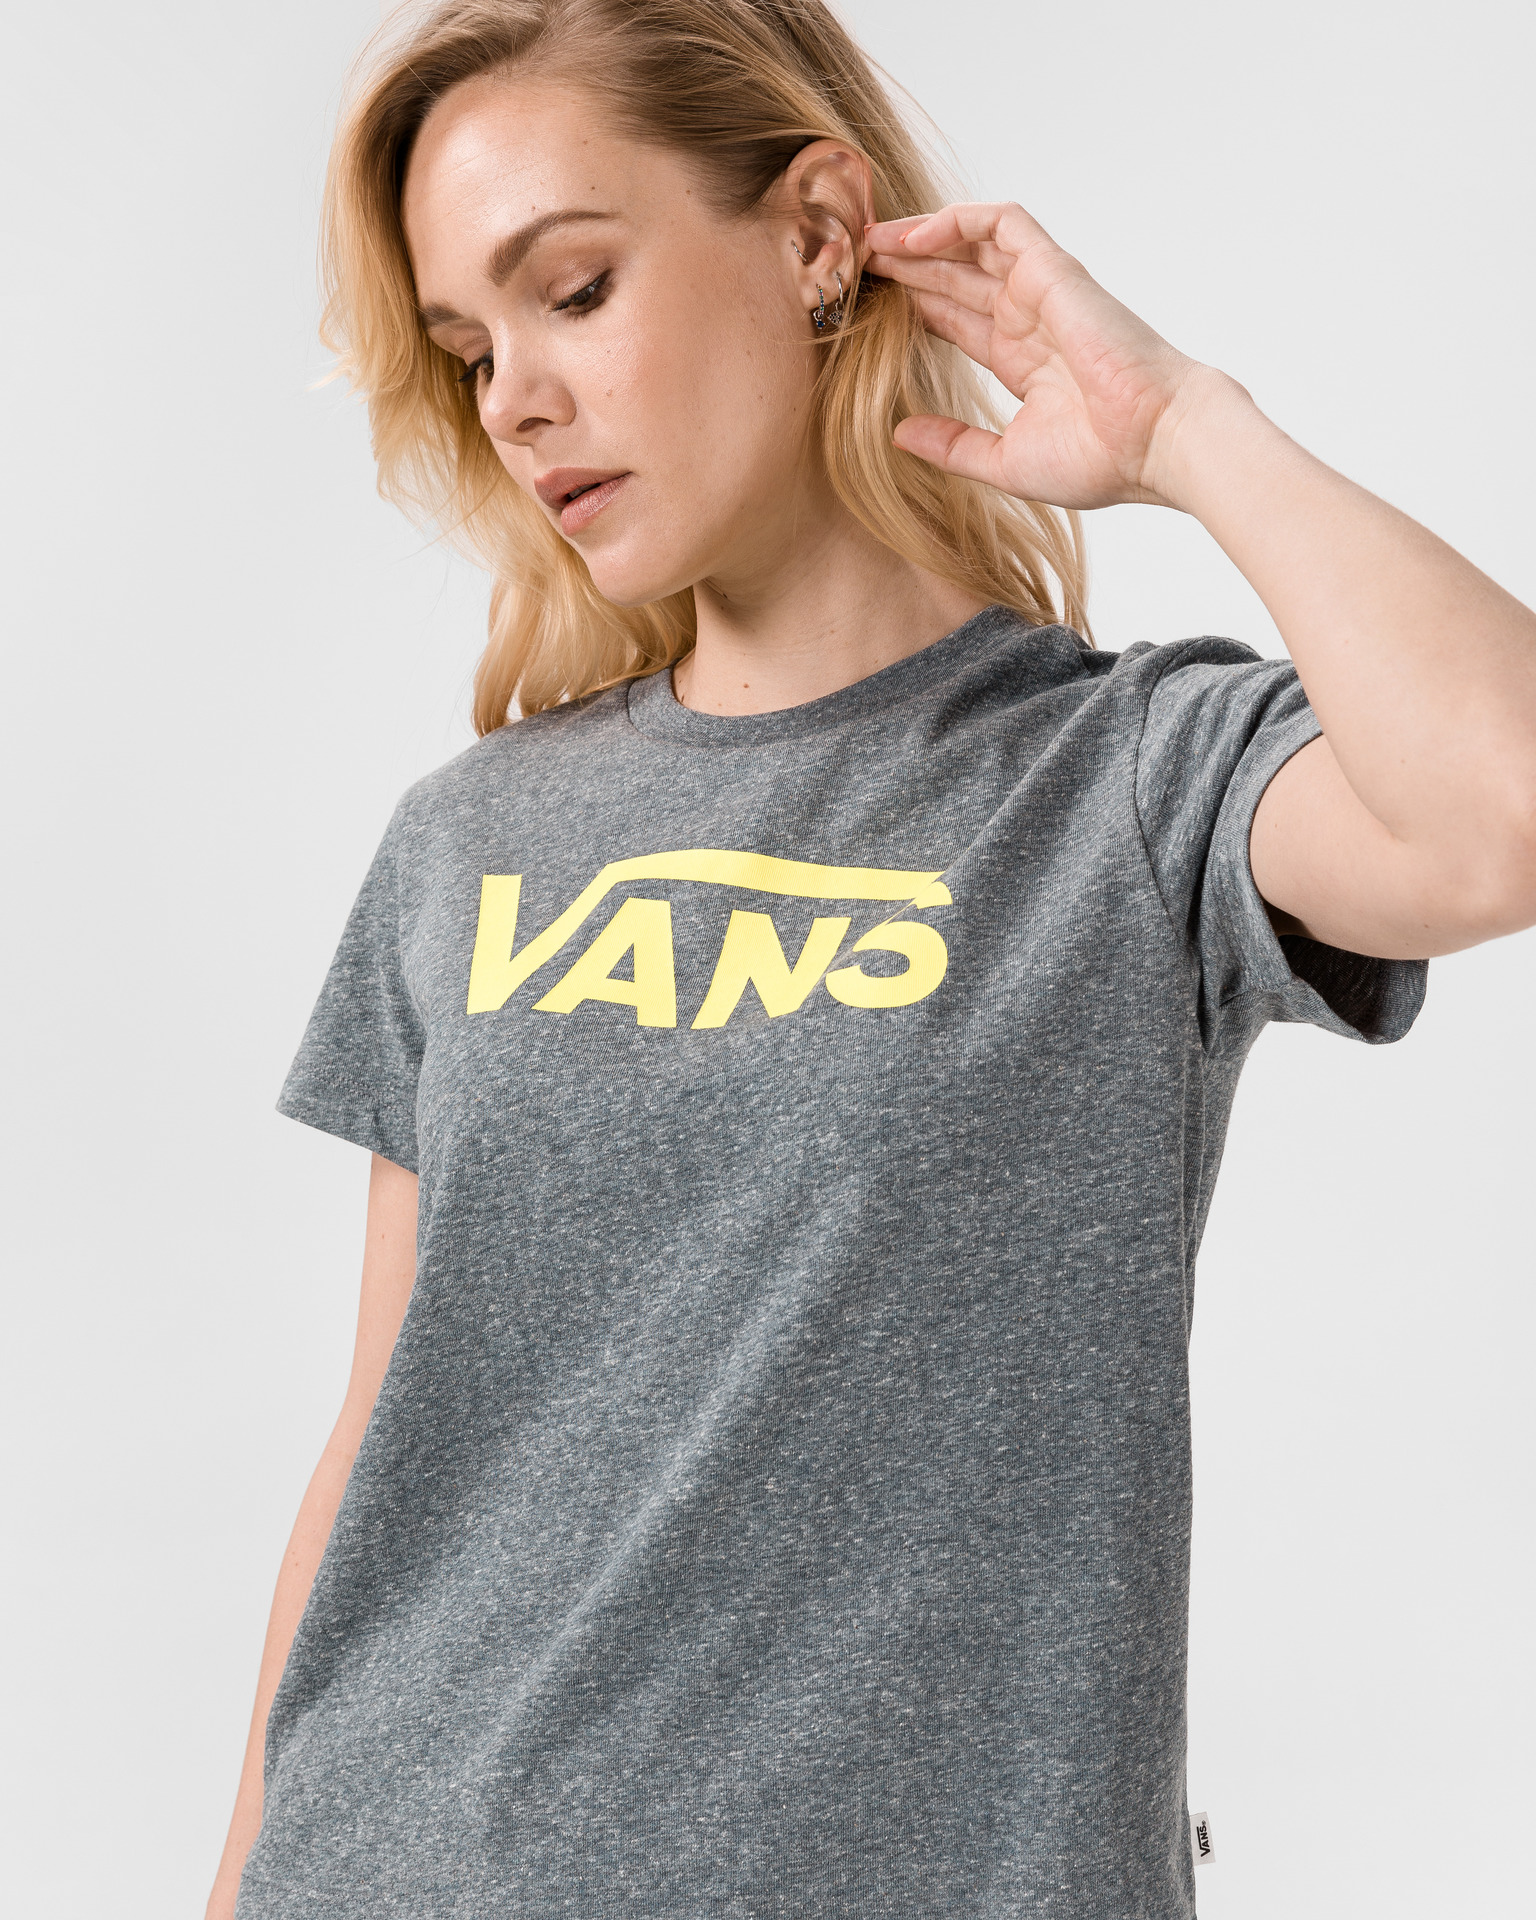 T-shirt - Vans V Flying